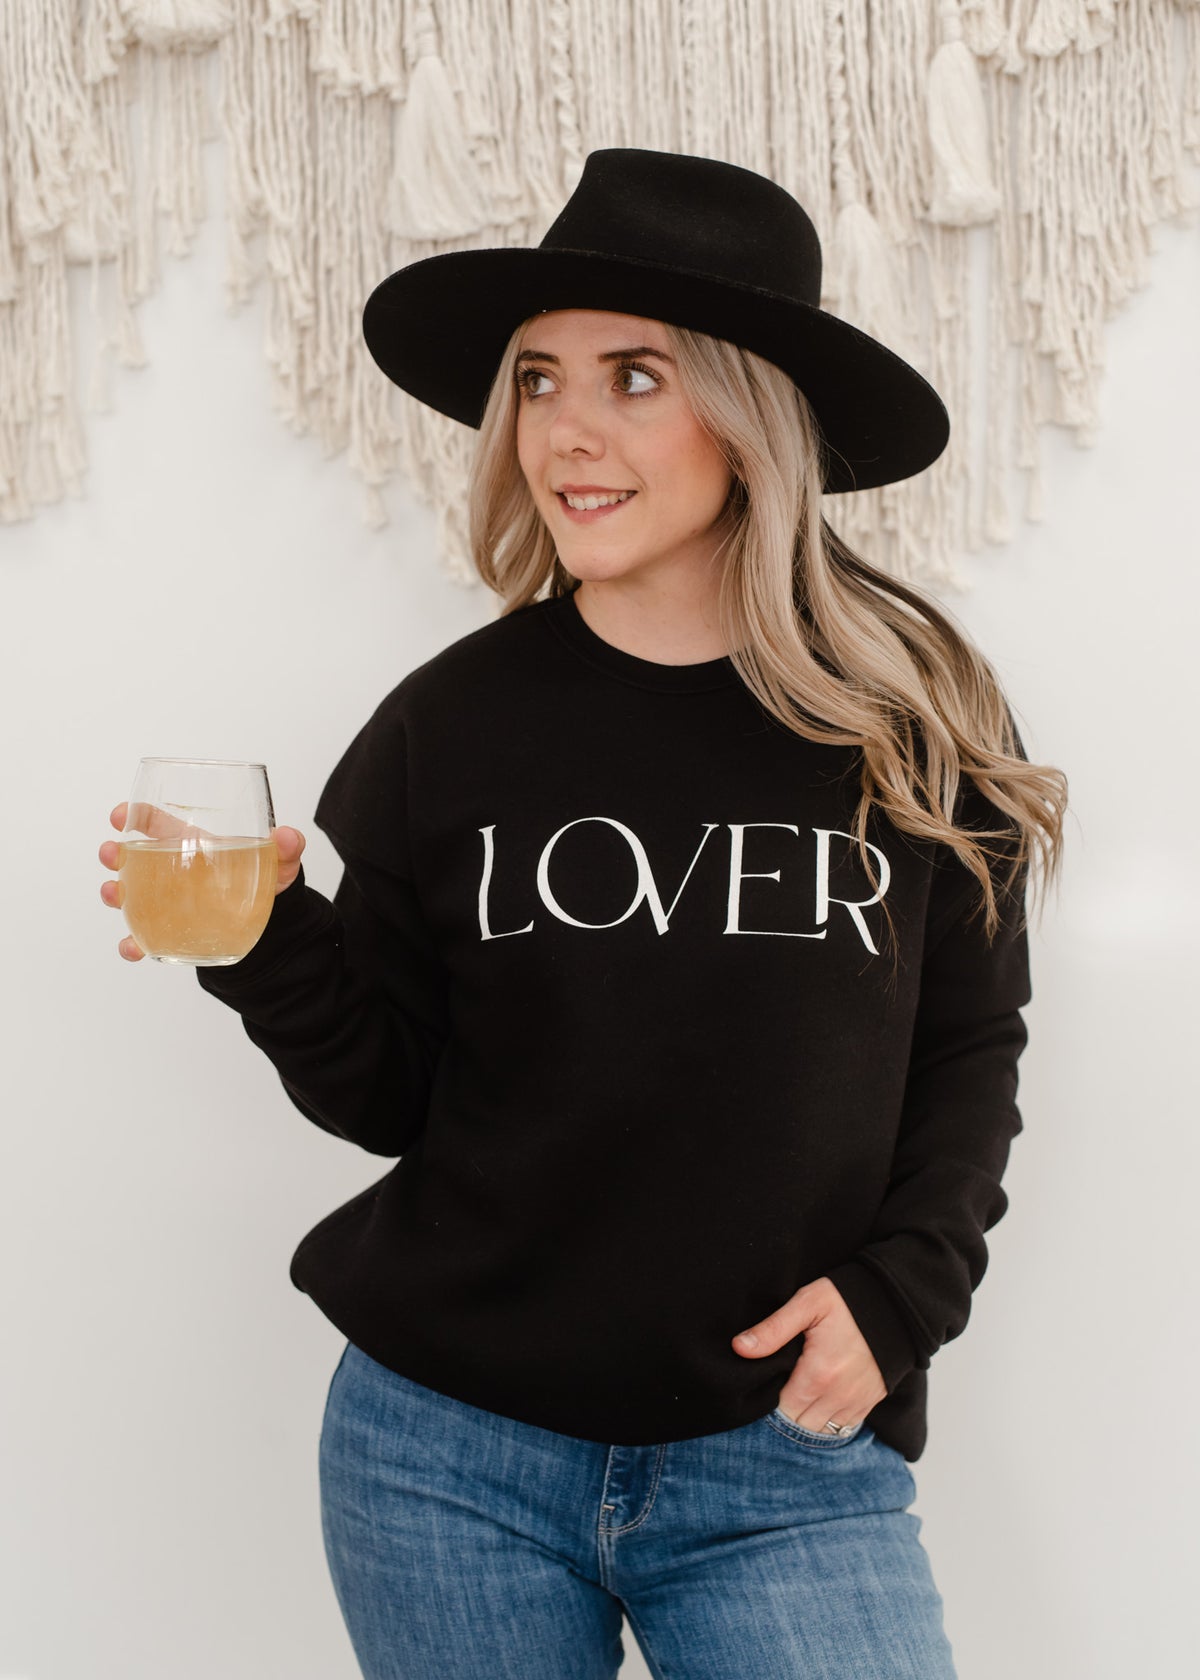 The Lover Sweatshirt